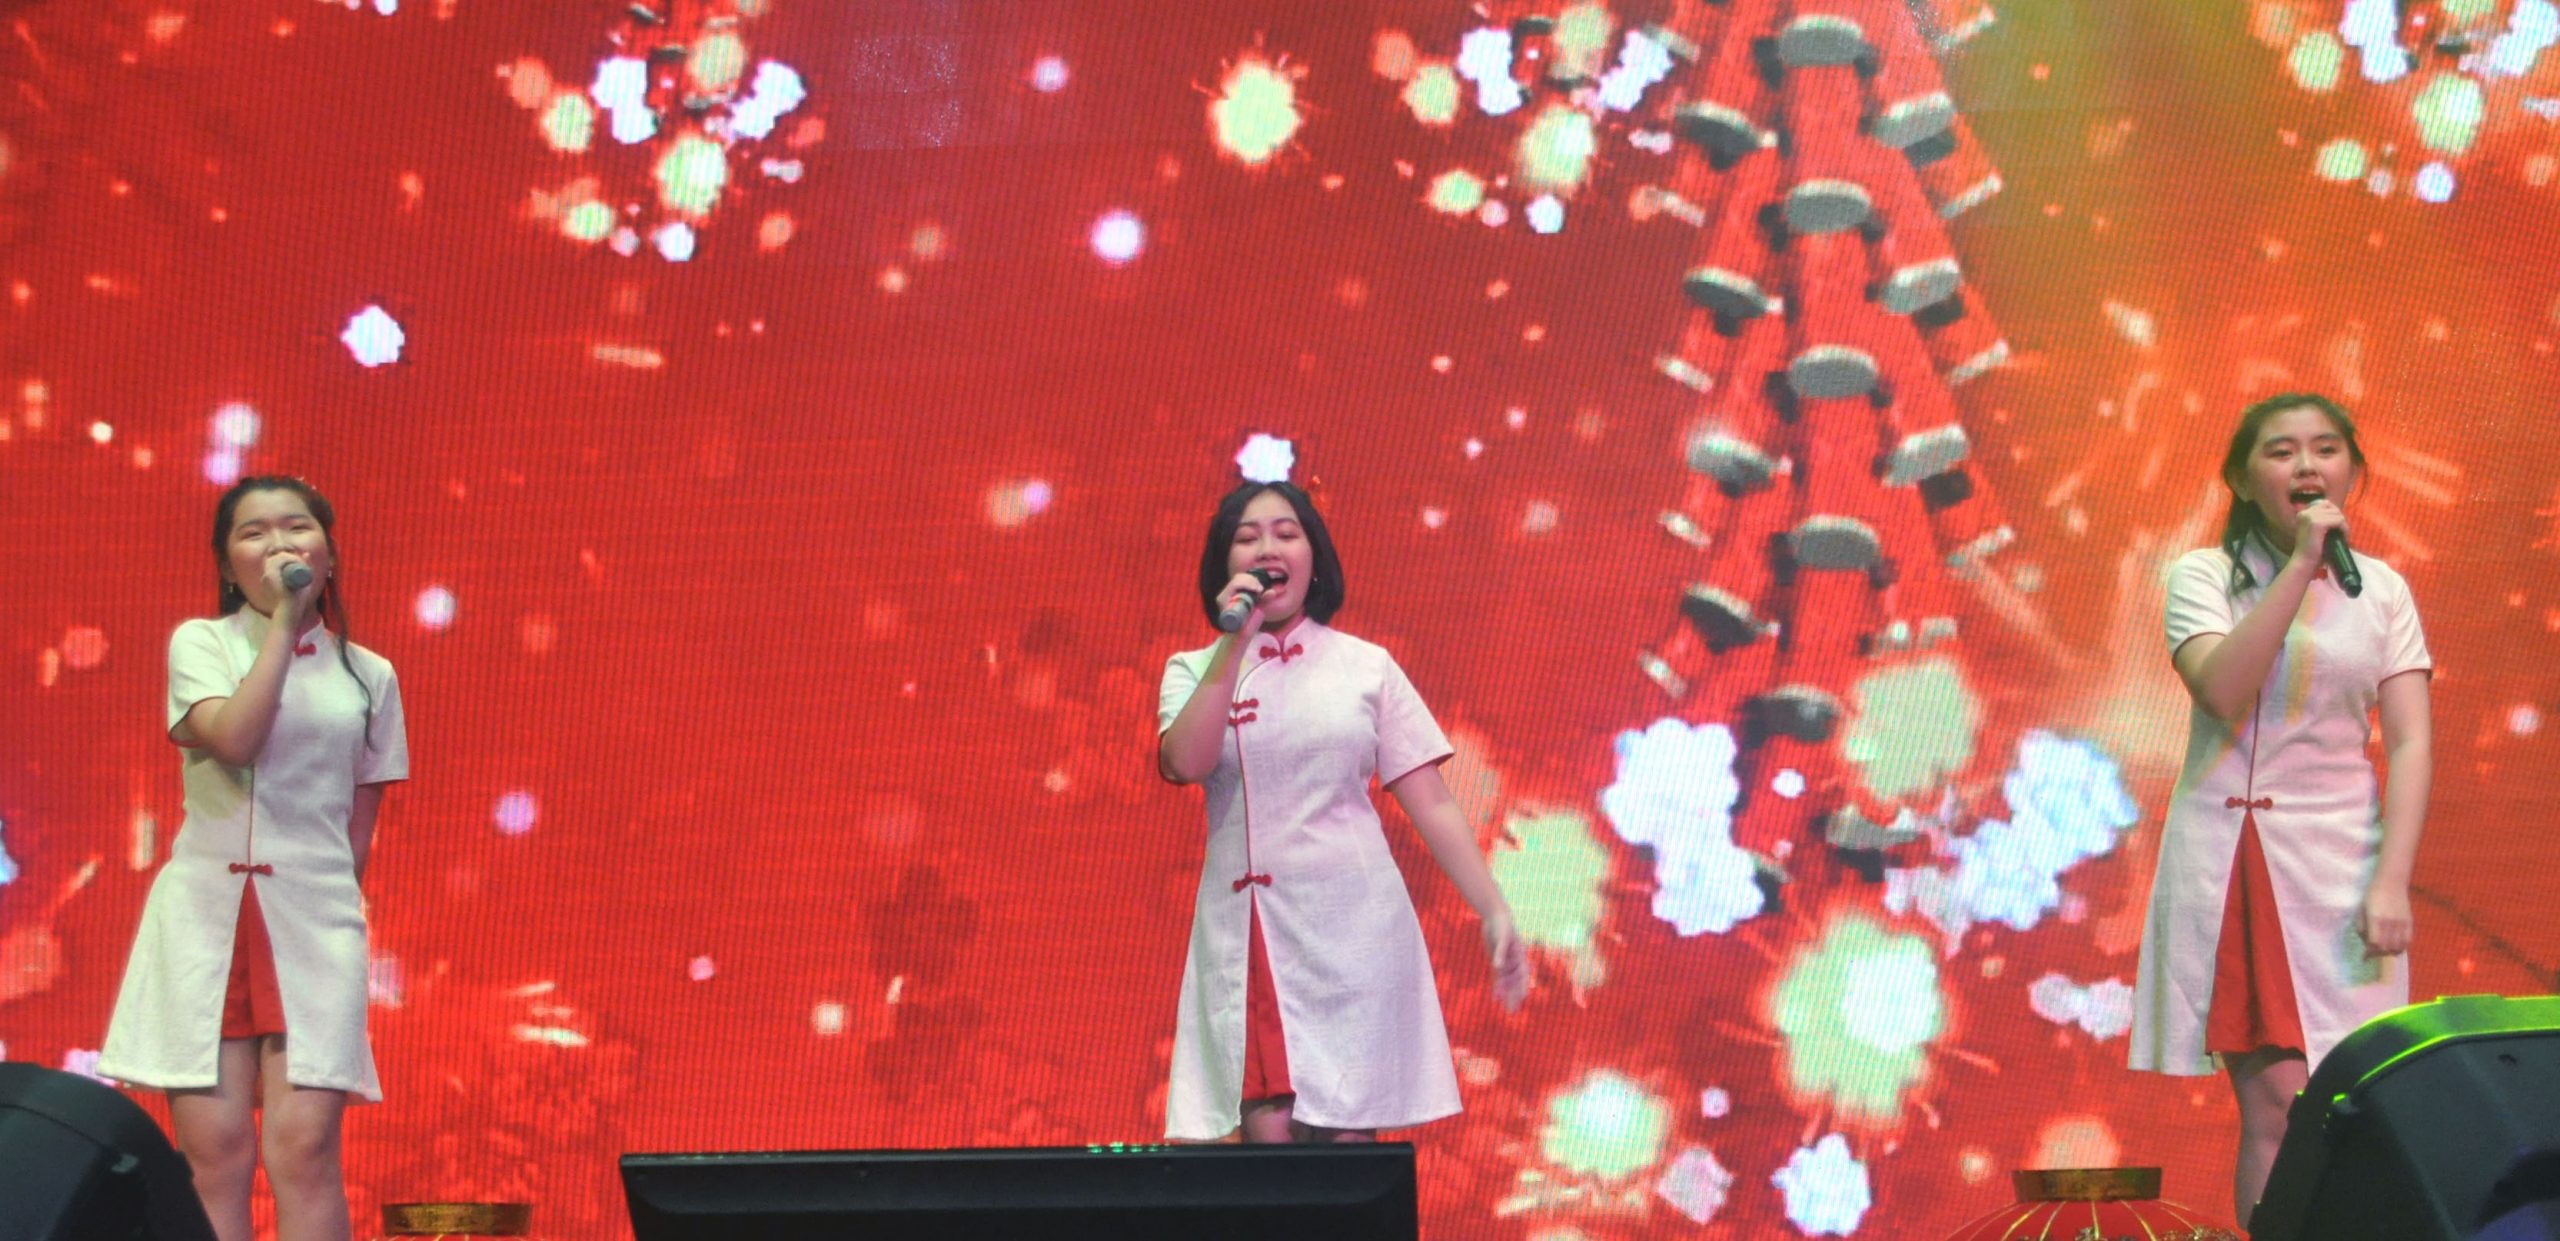 NS芙蓉/本报活动：“欢乐新春演唱会”15名歌手轮流献唱，号召群众为华教献力